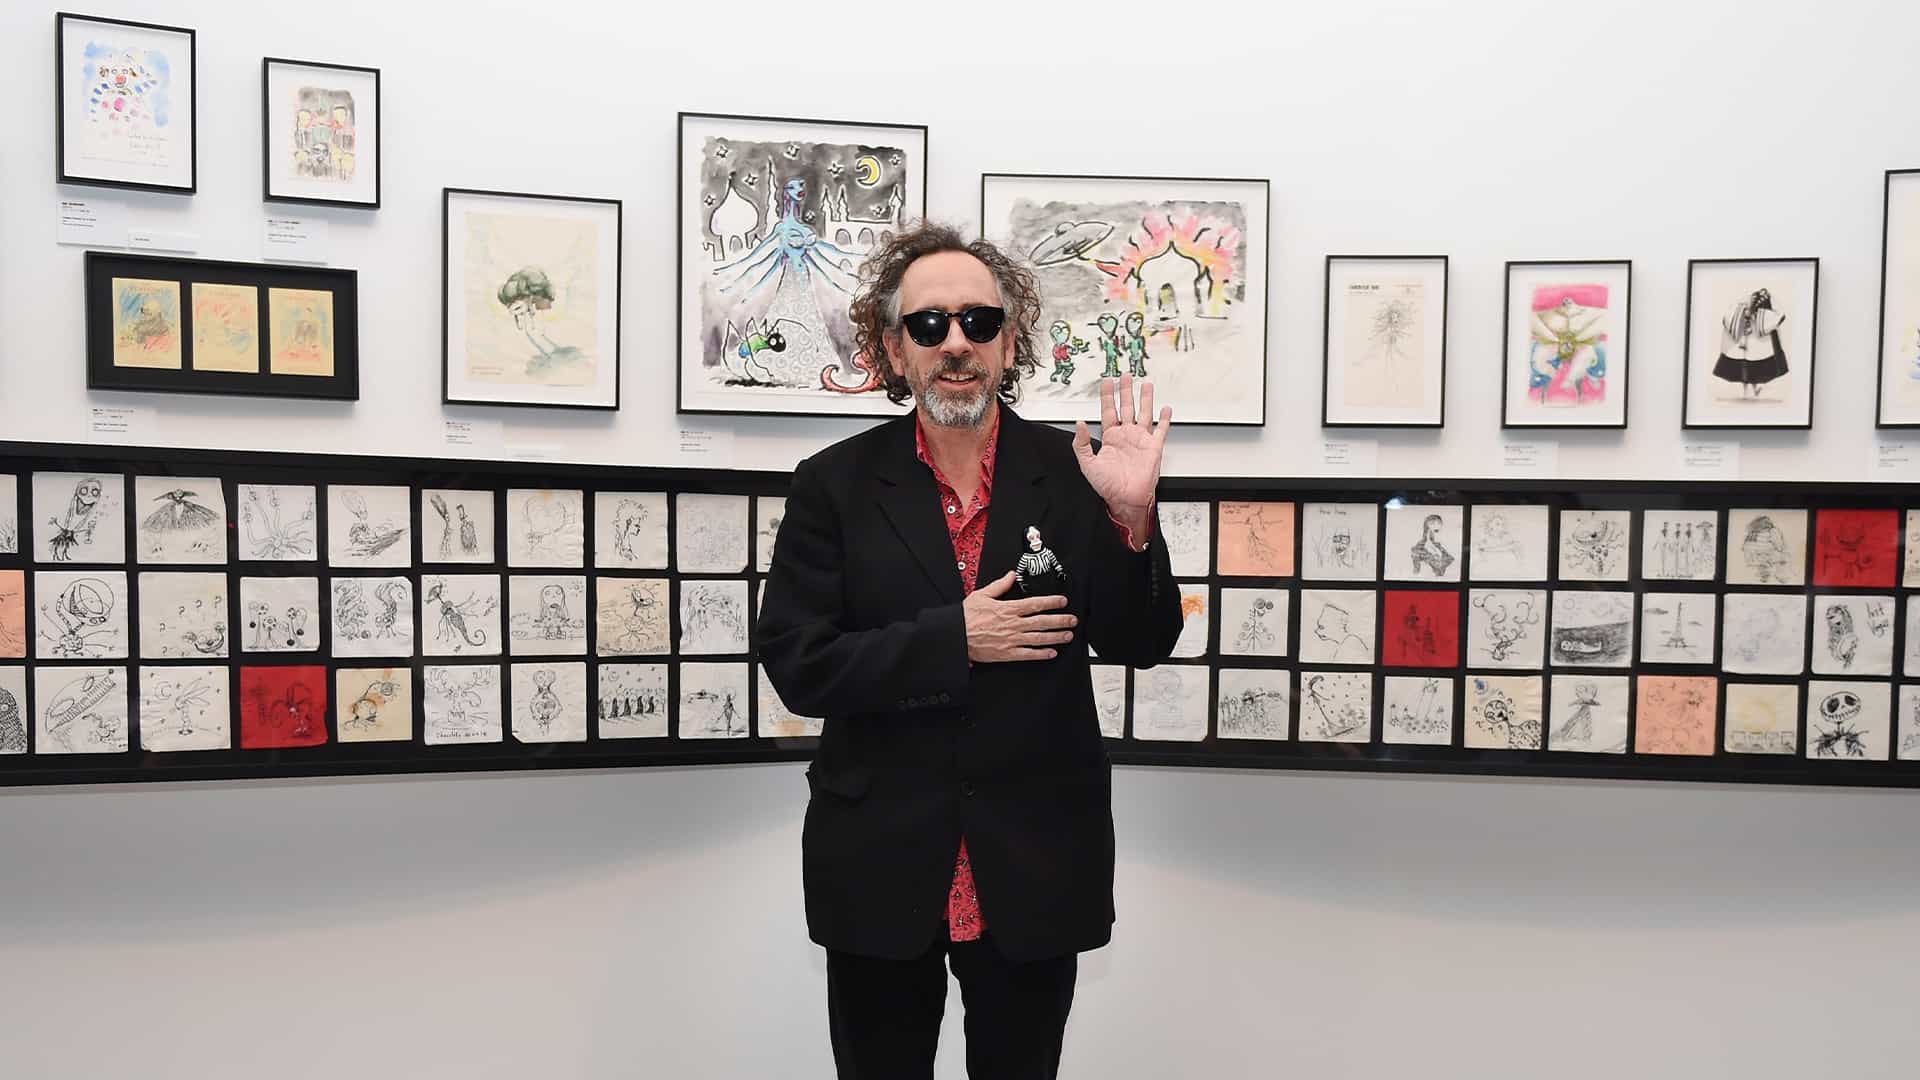 Decir que estoy emocionado por la nueva exposición de arte de Tim Burton es quedarse corto